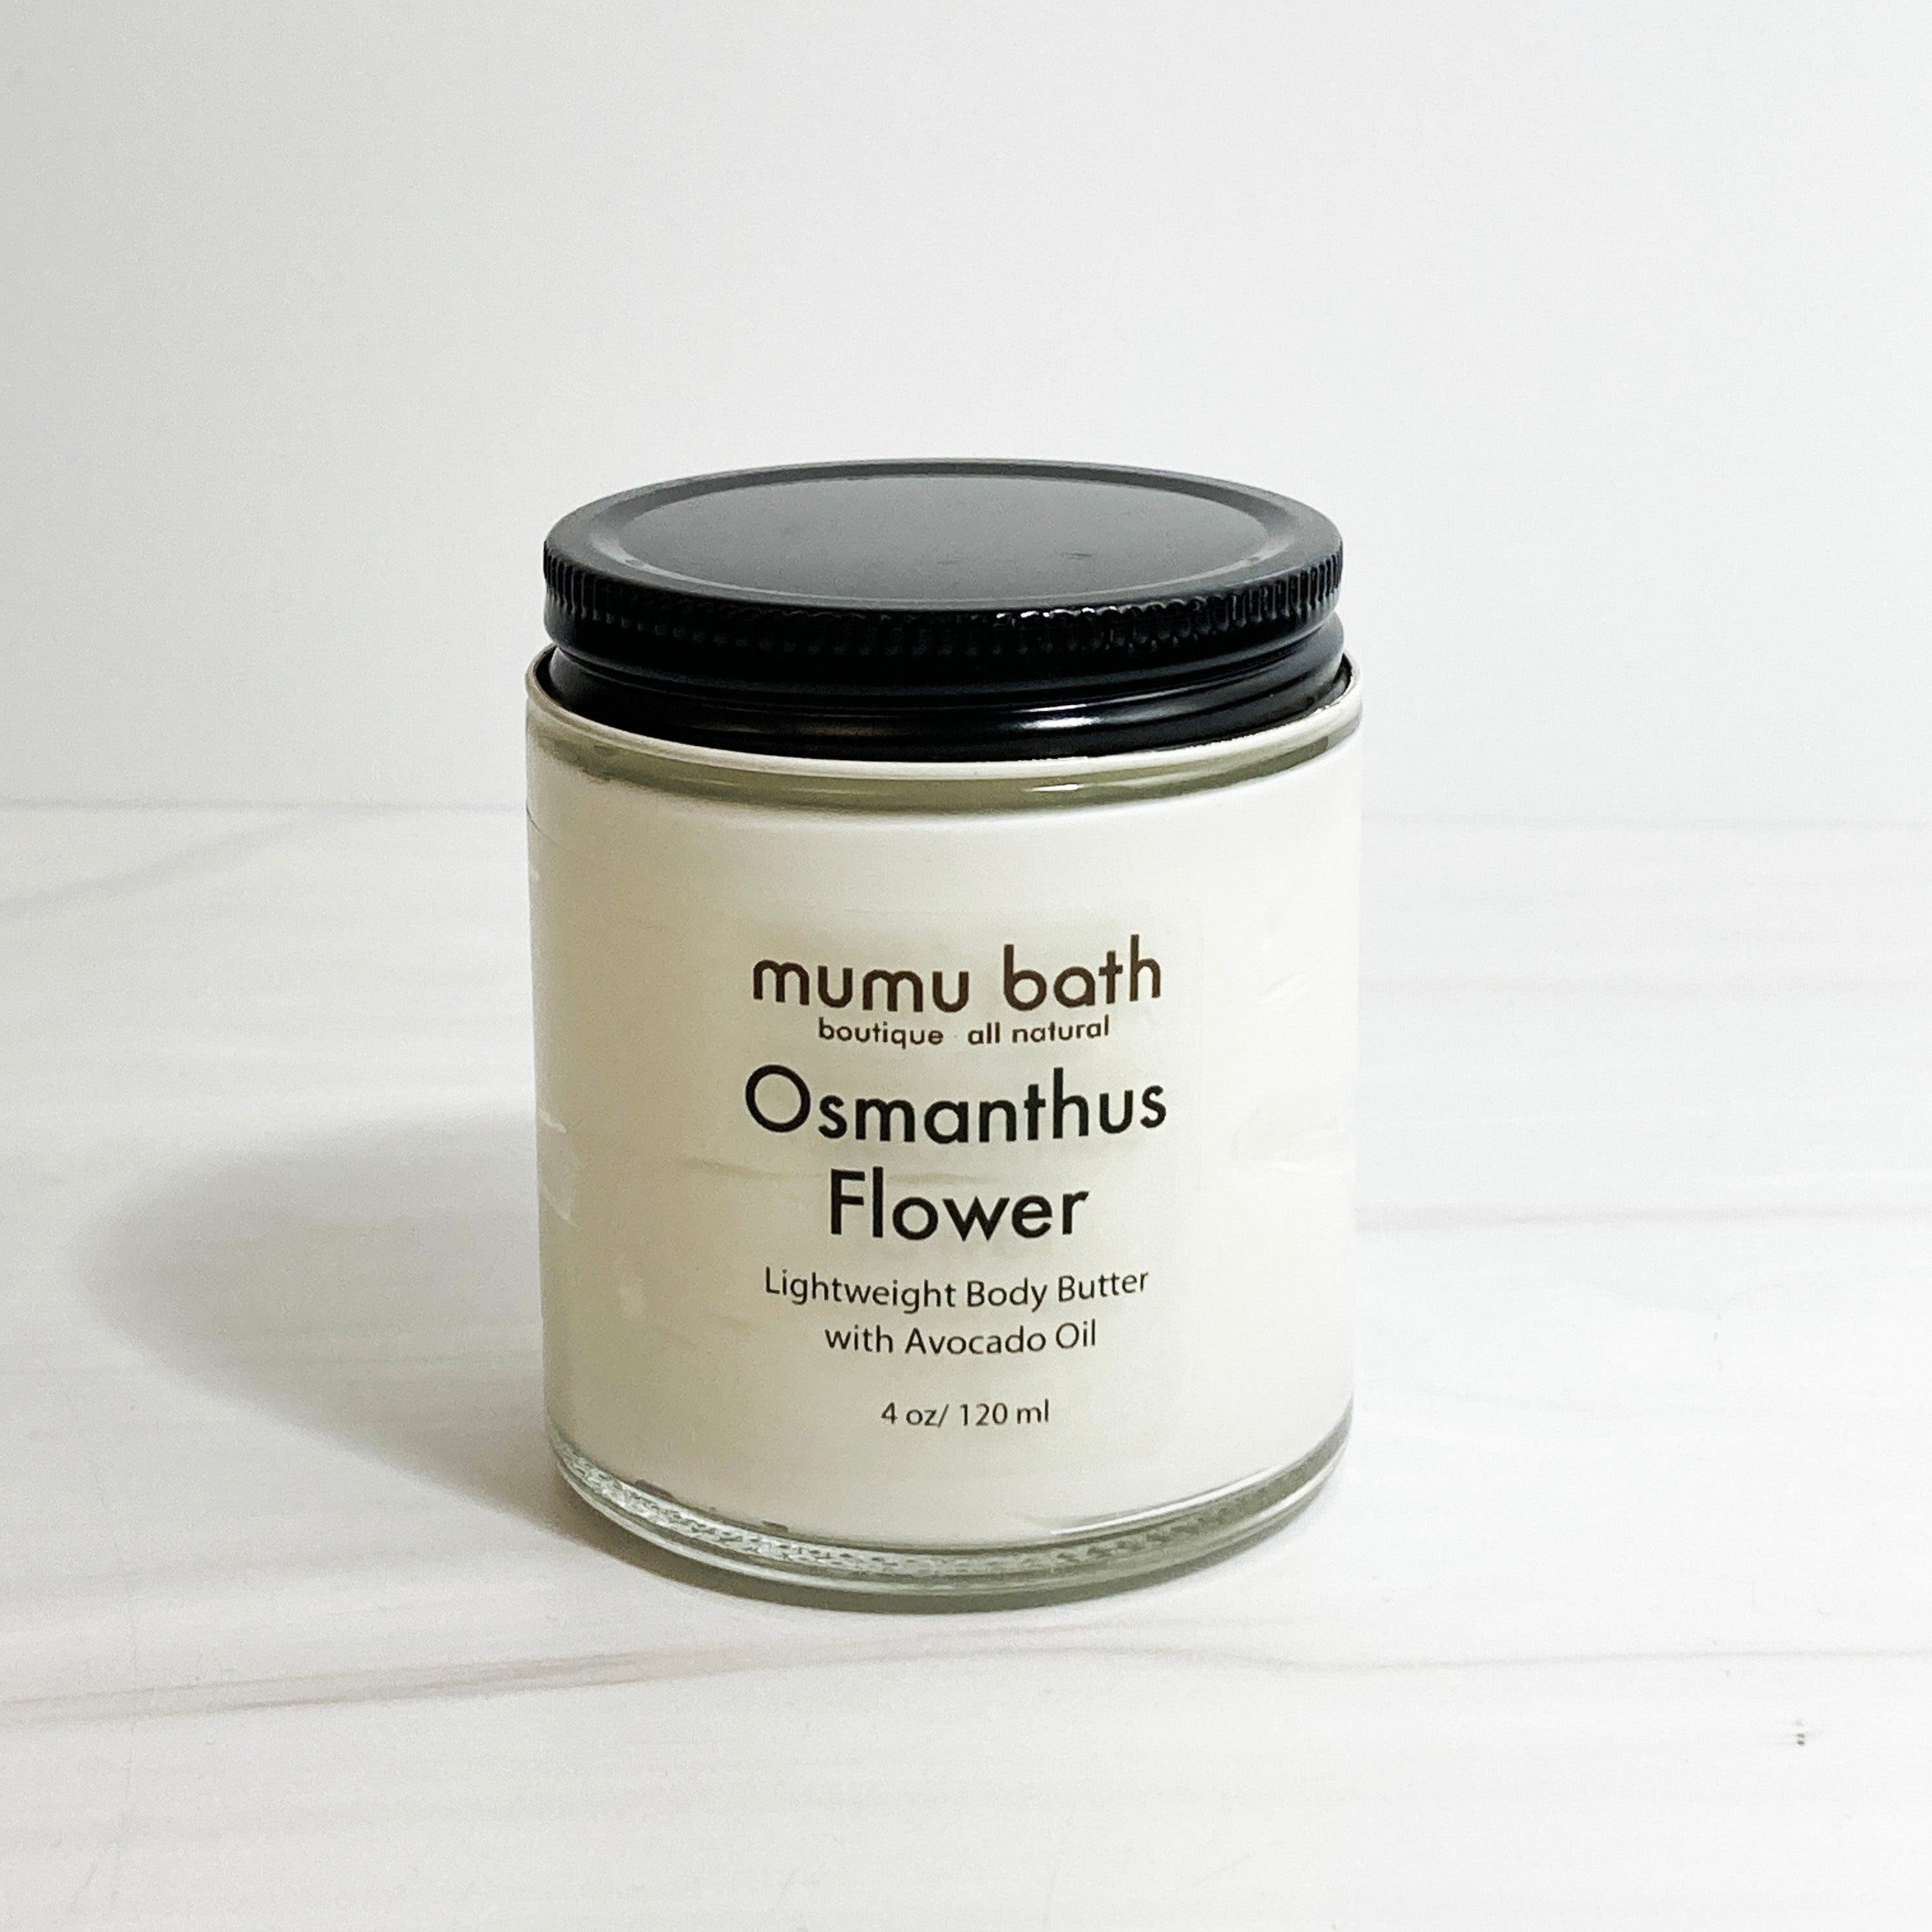 Osmanthus Flower Lightweight Body Butter - Mumu Bath